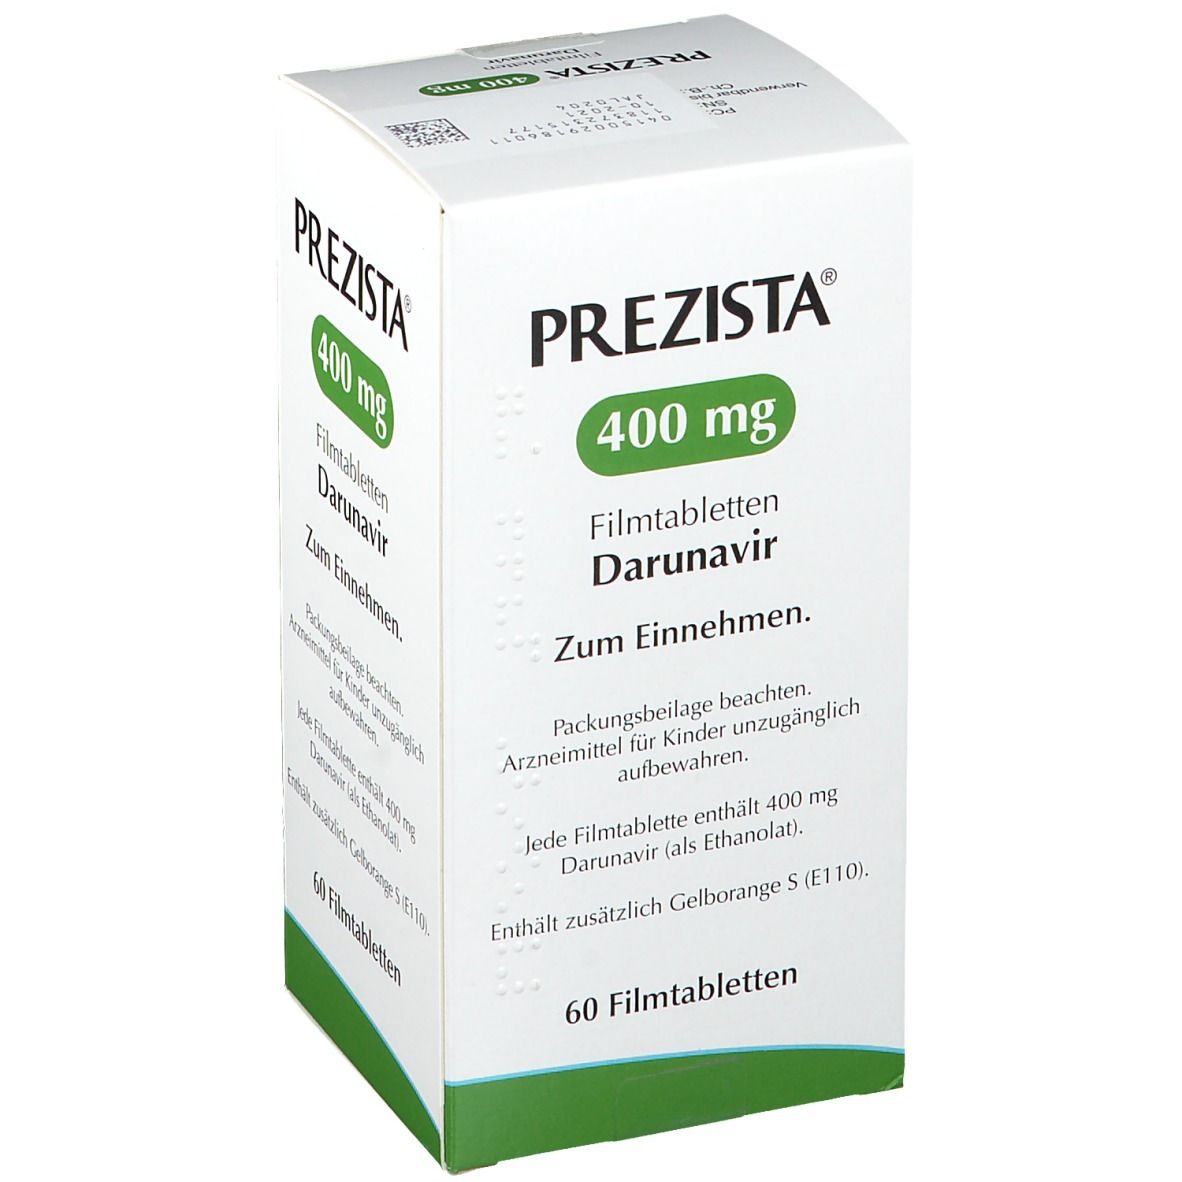 PREZISTA® 400 mg